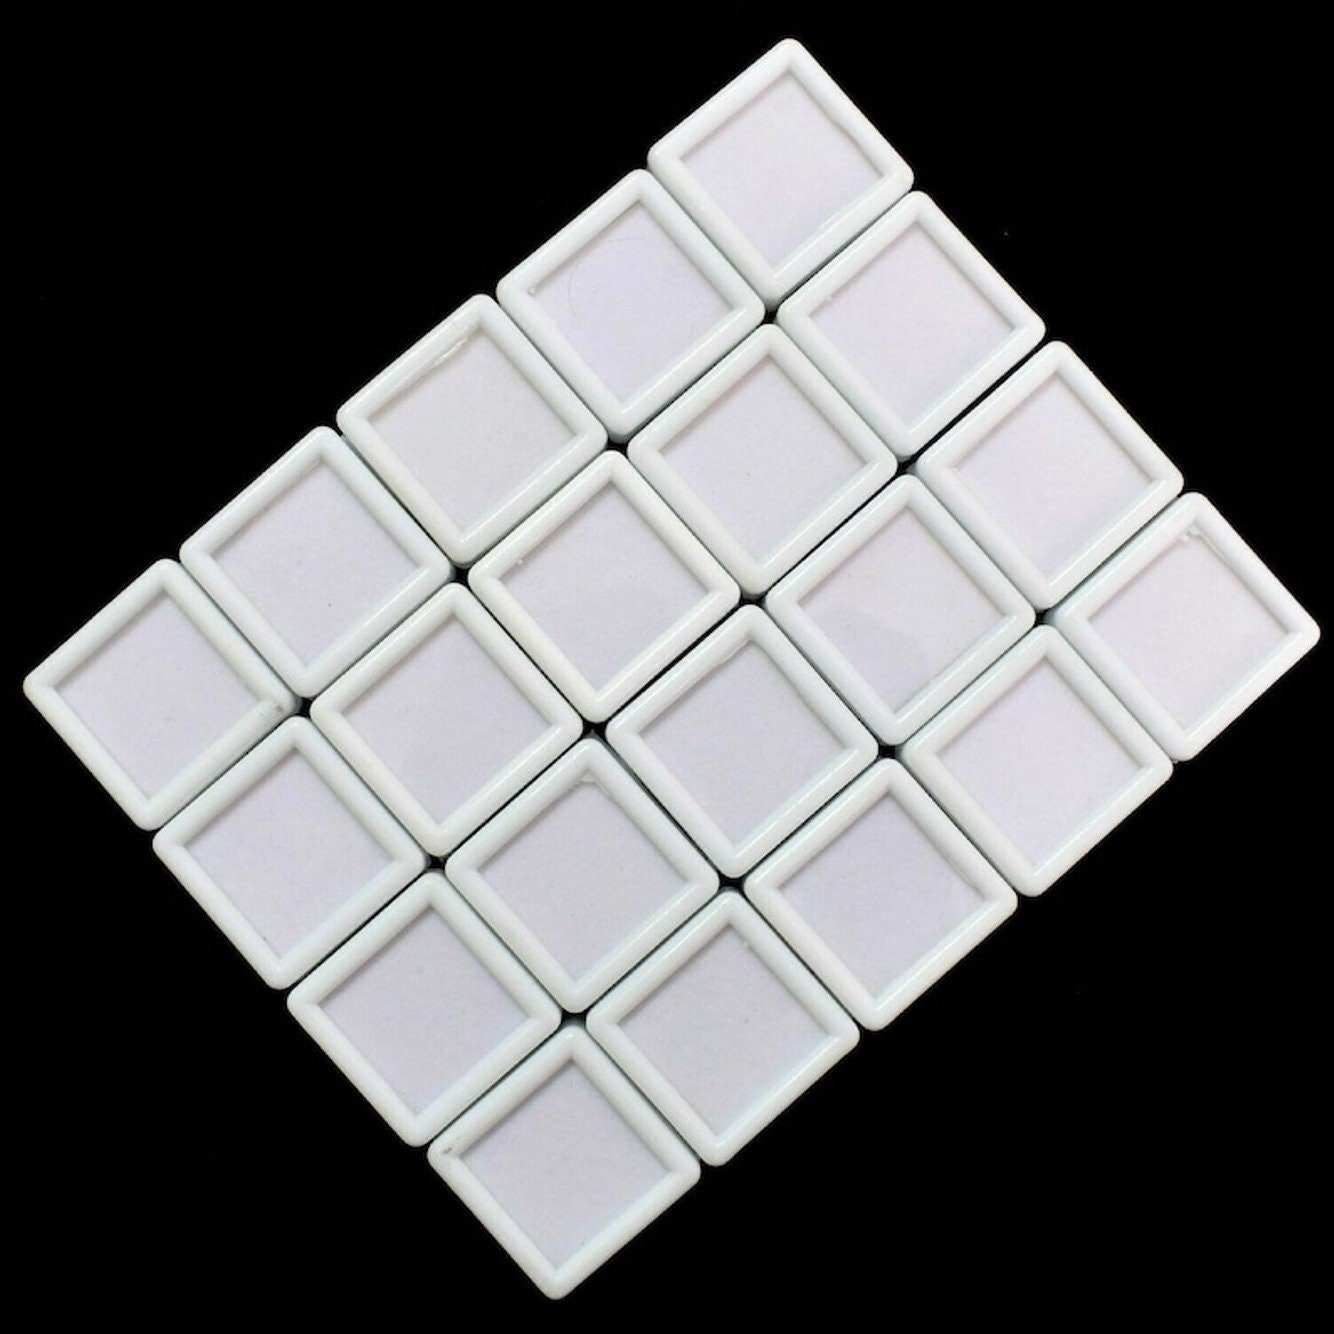 Plastic Gems-30 Per Unit